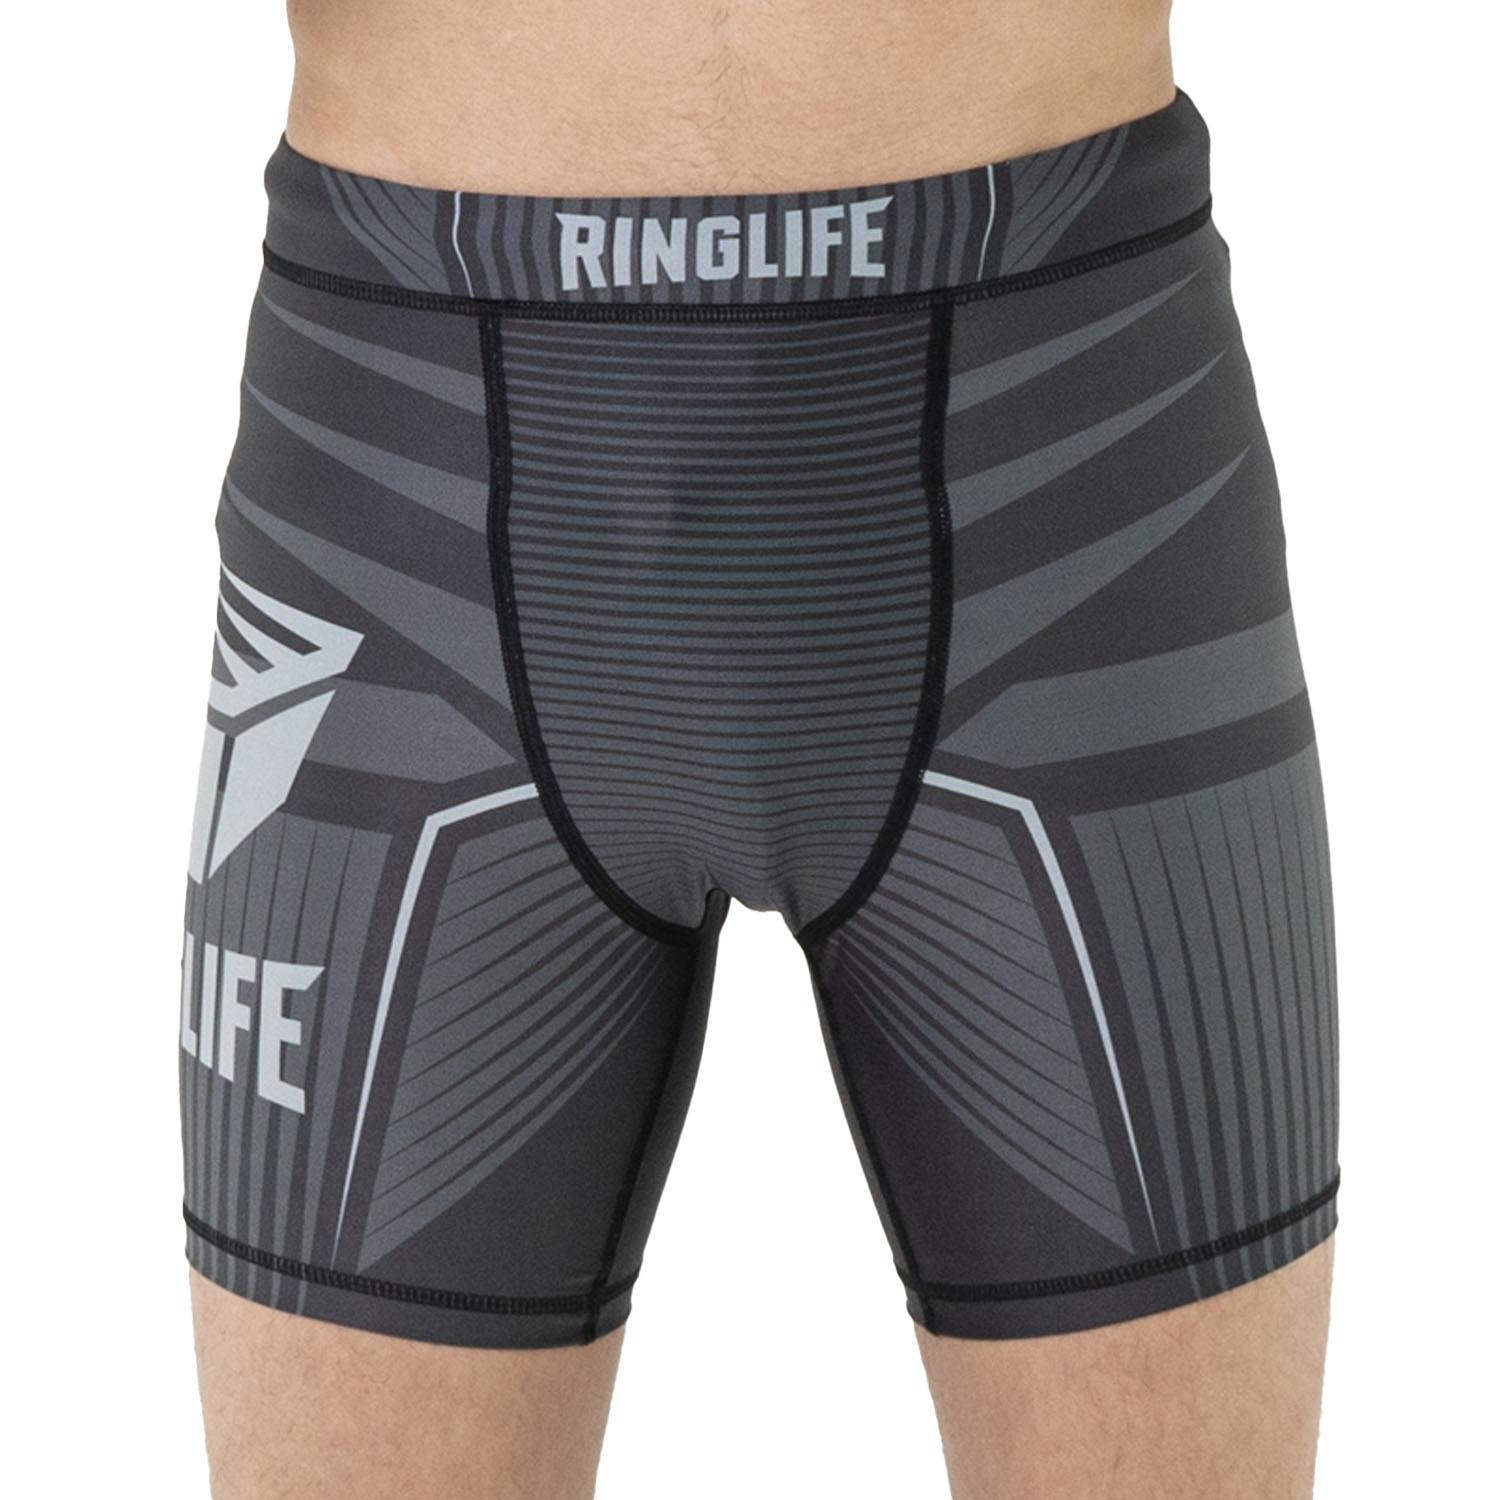 RINGLIFE Compression Shorts - Octaring schwarz-grau 3XL